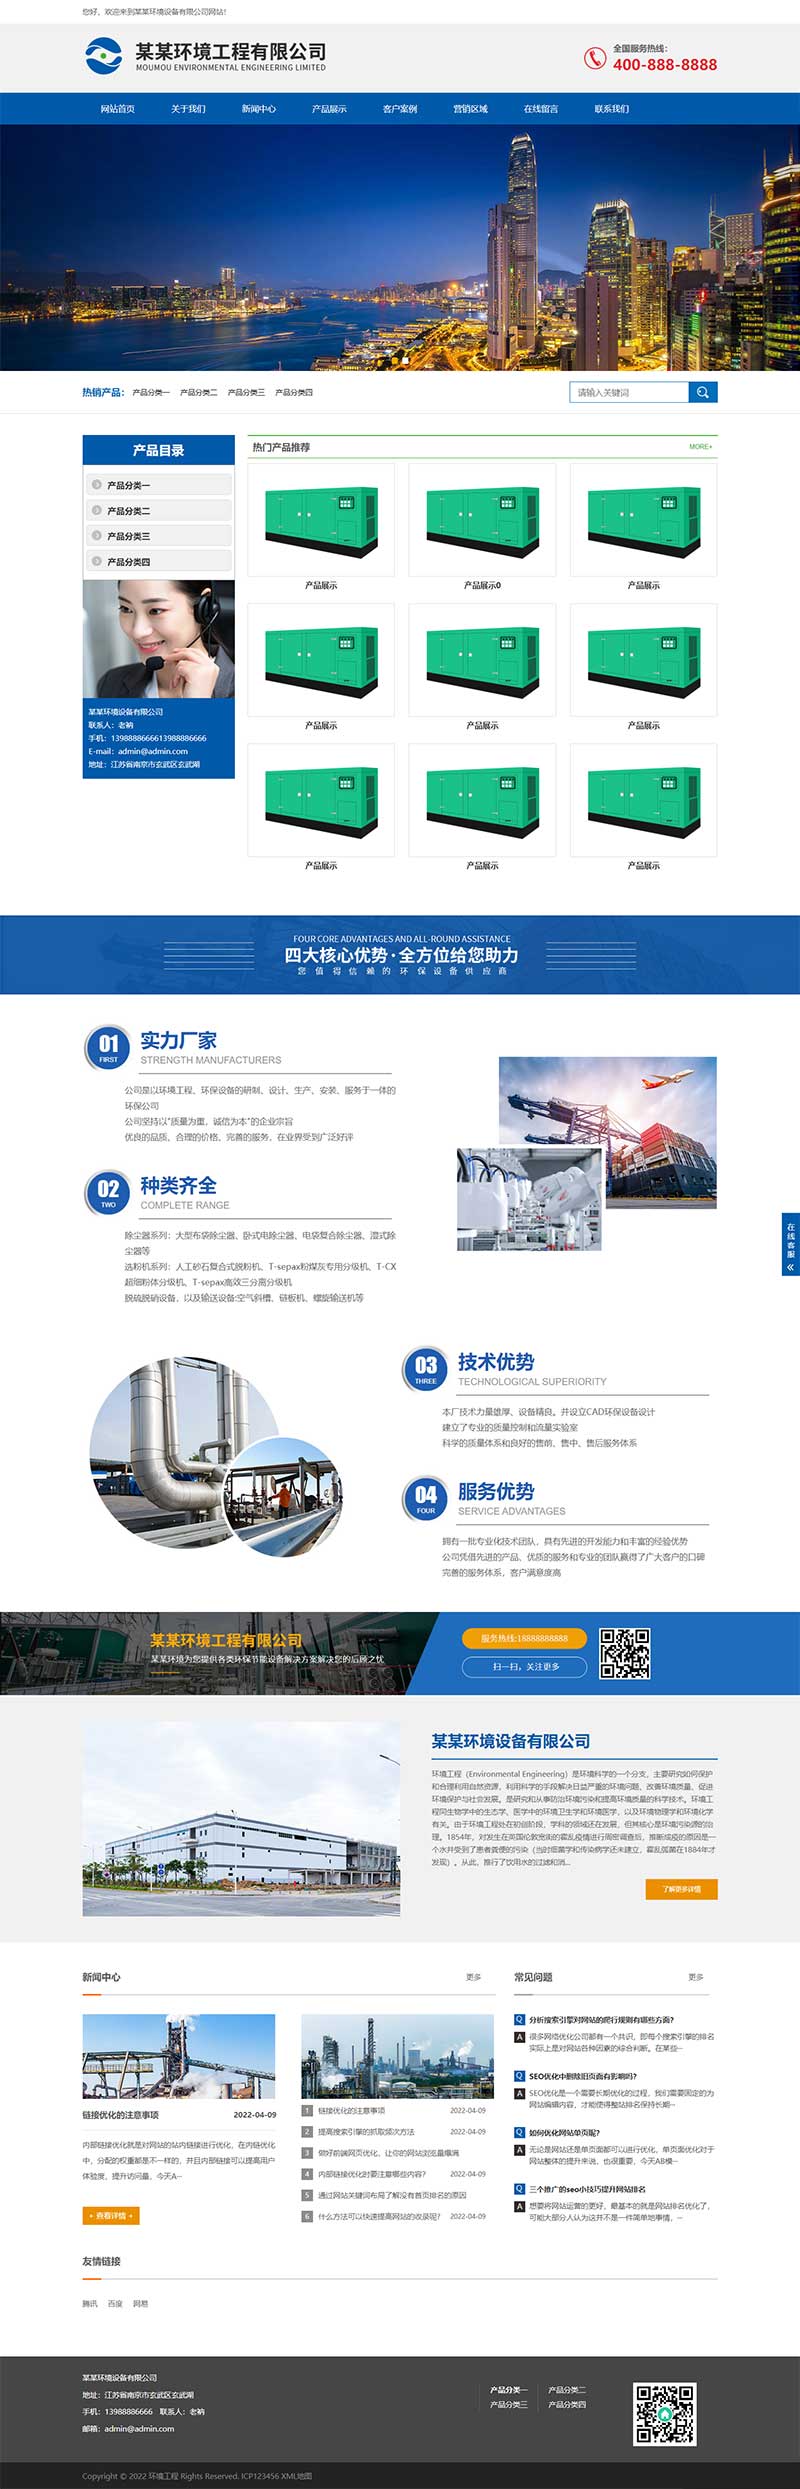 蓝色响应式环境工程设备网站模板 html5环保设备网站源码下载